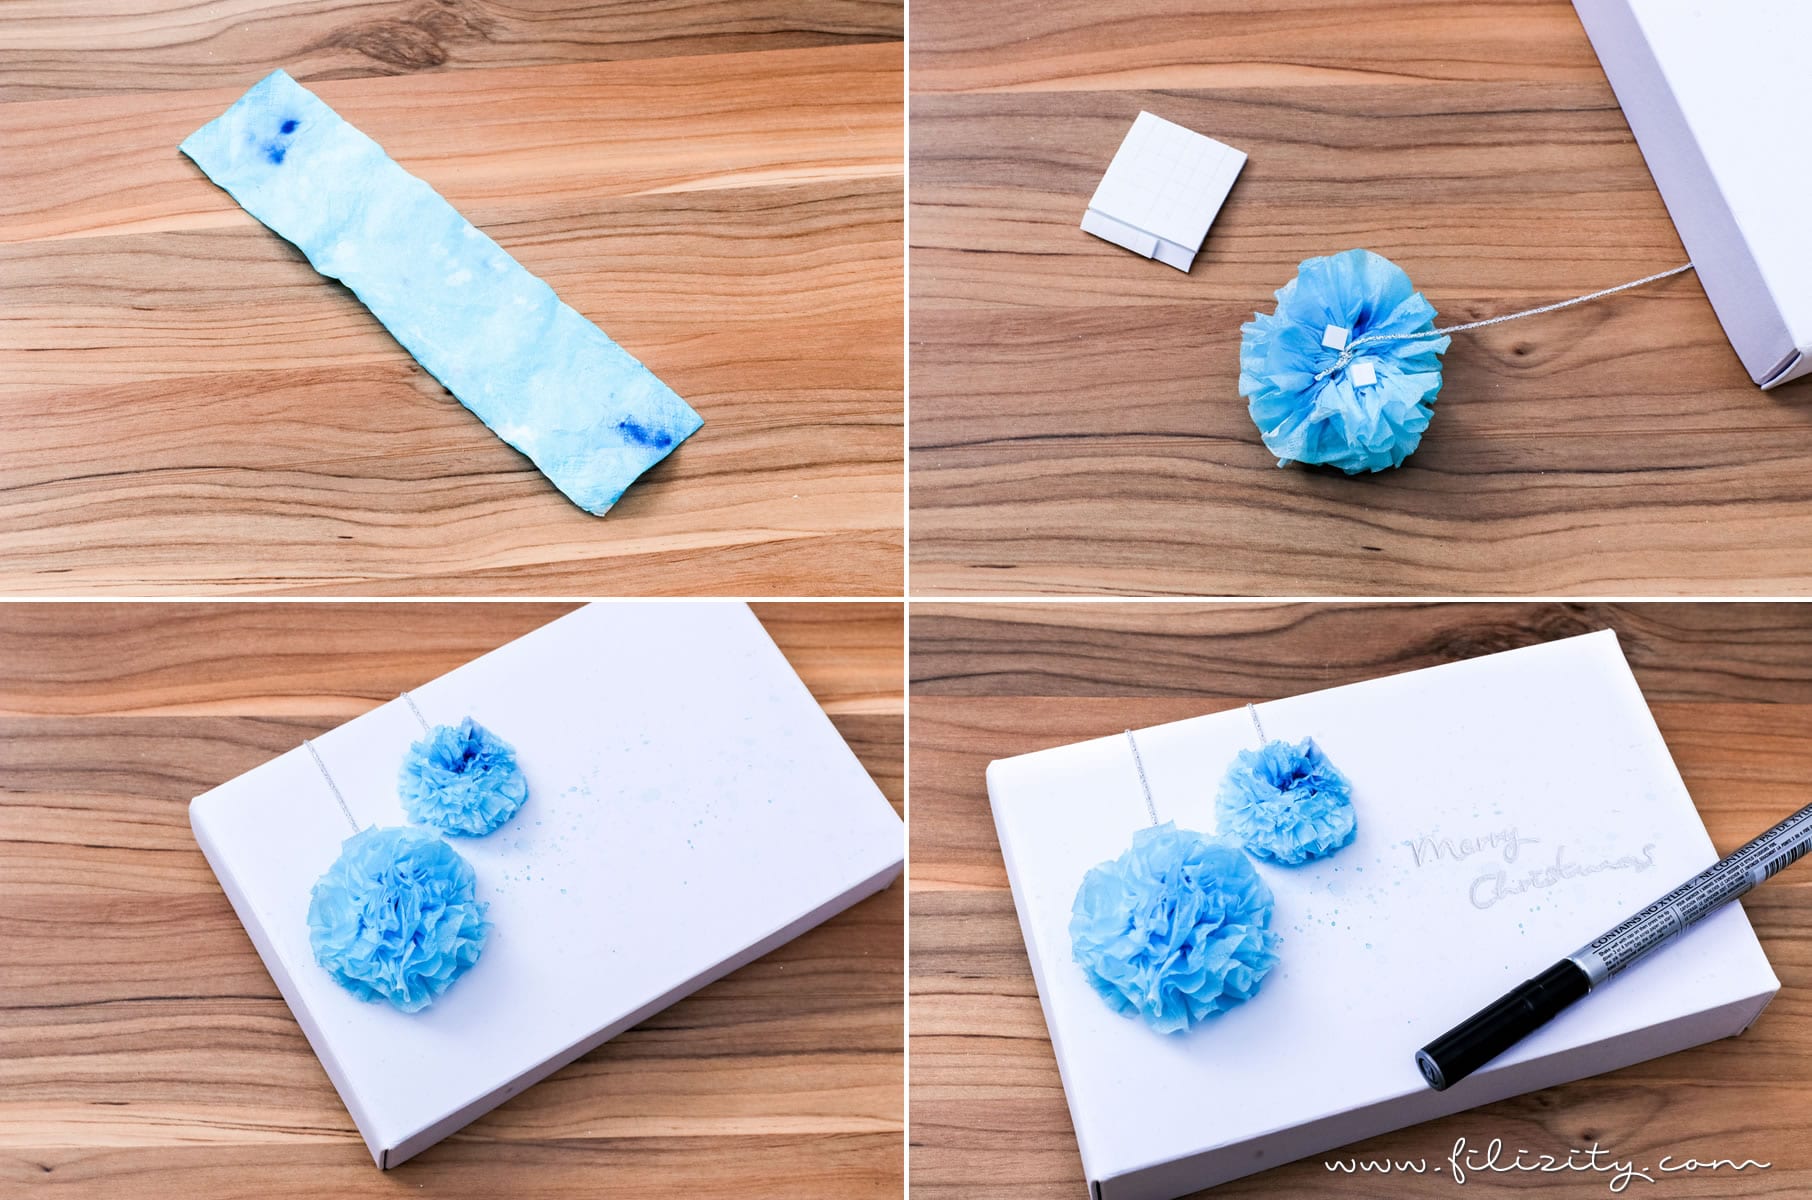 3 weihnachtliche DIY-Ideen mit Taschentüchern | Geschenkverpackung mit Taschentuch-Bommeln | Filizity.com | DIY-Blog aus dem Rheinland #weihnachten #weihnachtsdeko #tempo